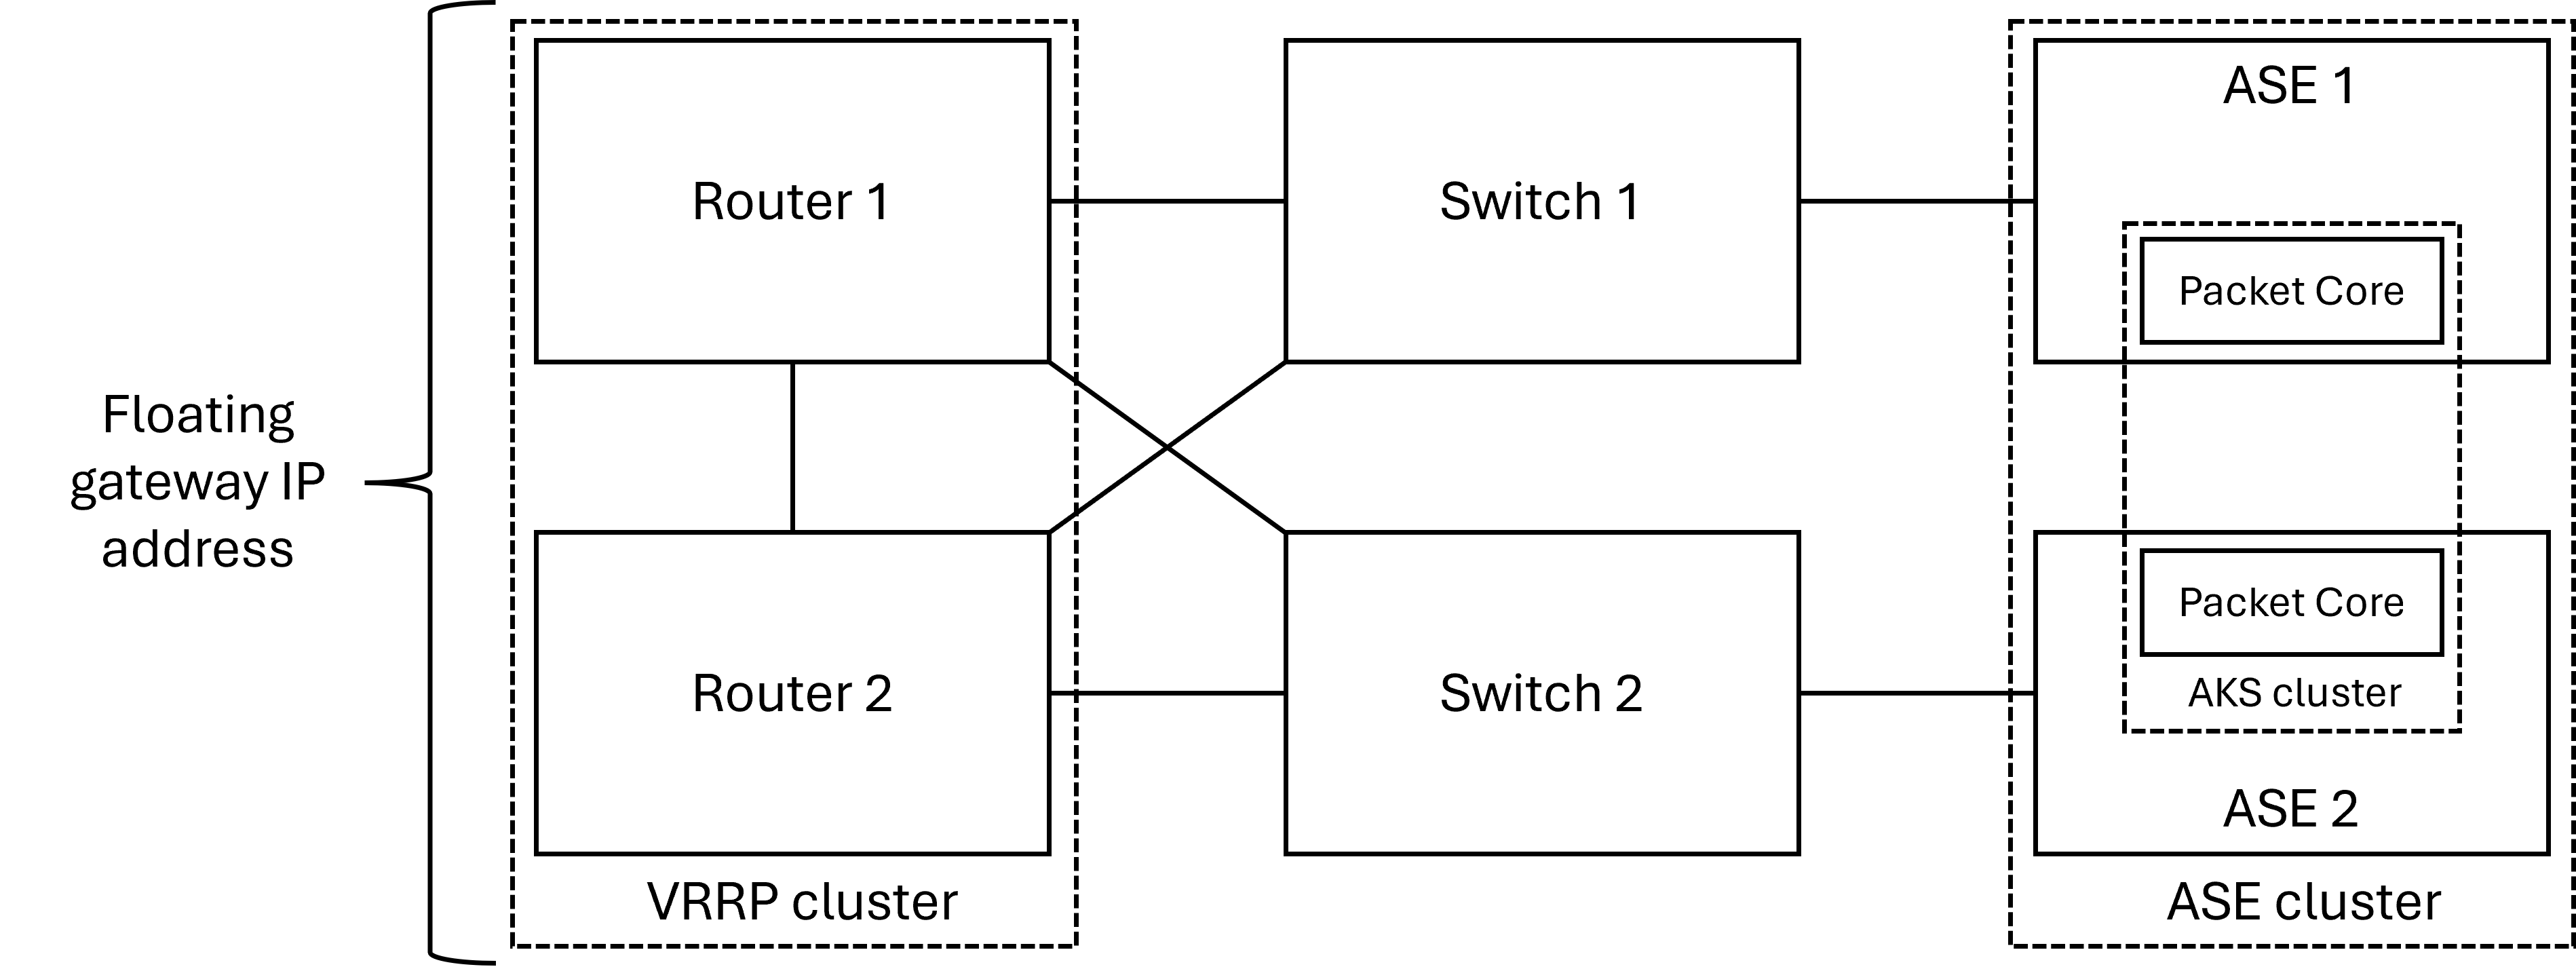 Diagramma che mostra il layout fisico della rete di accesso con una coppia ridondante di router.